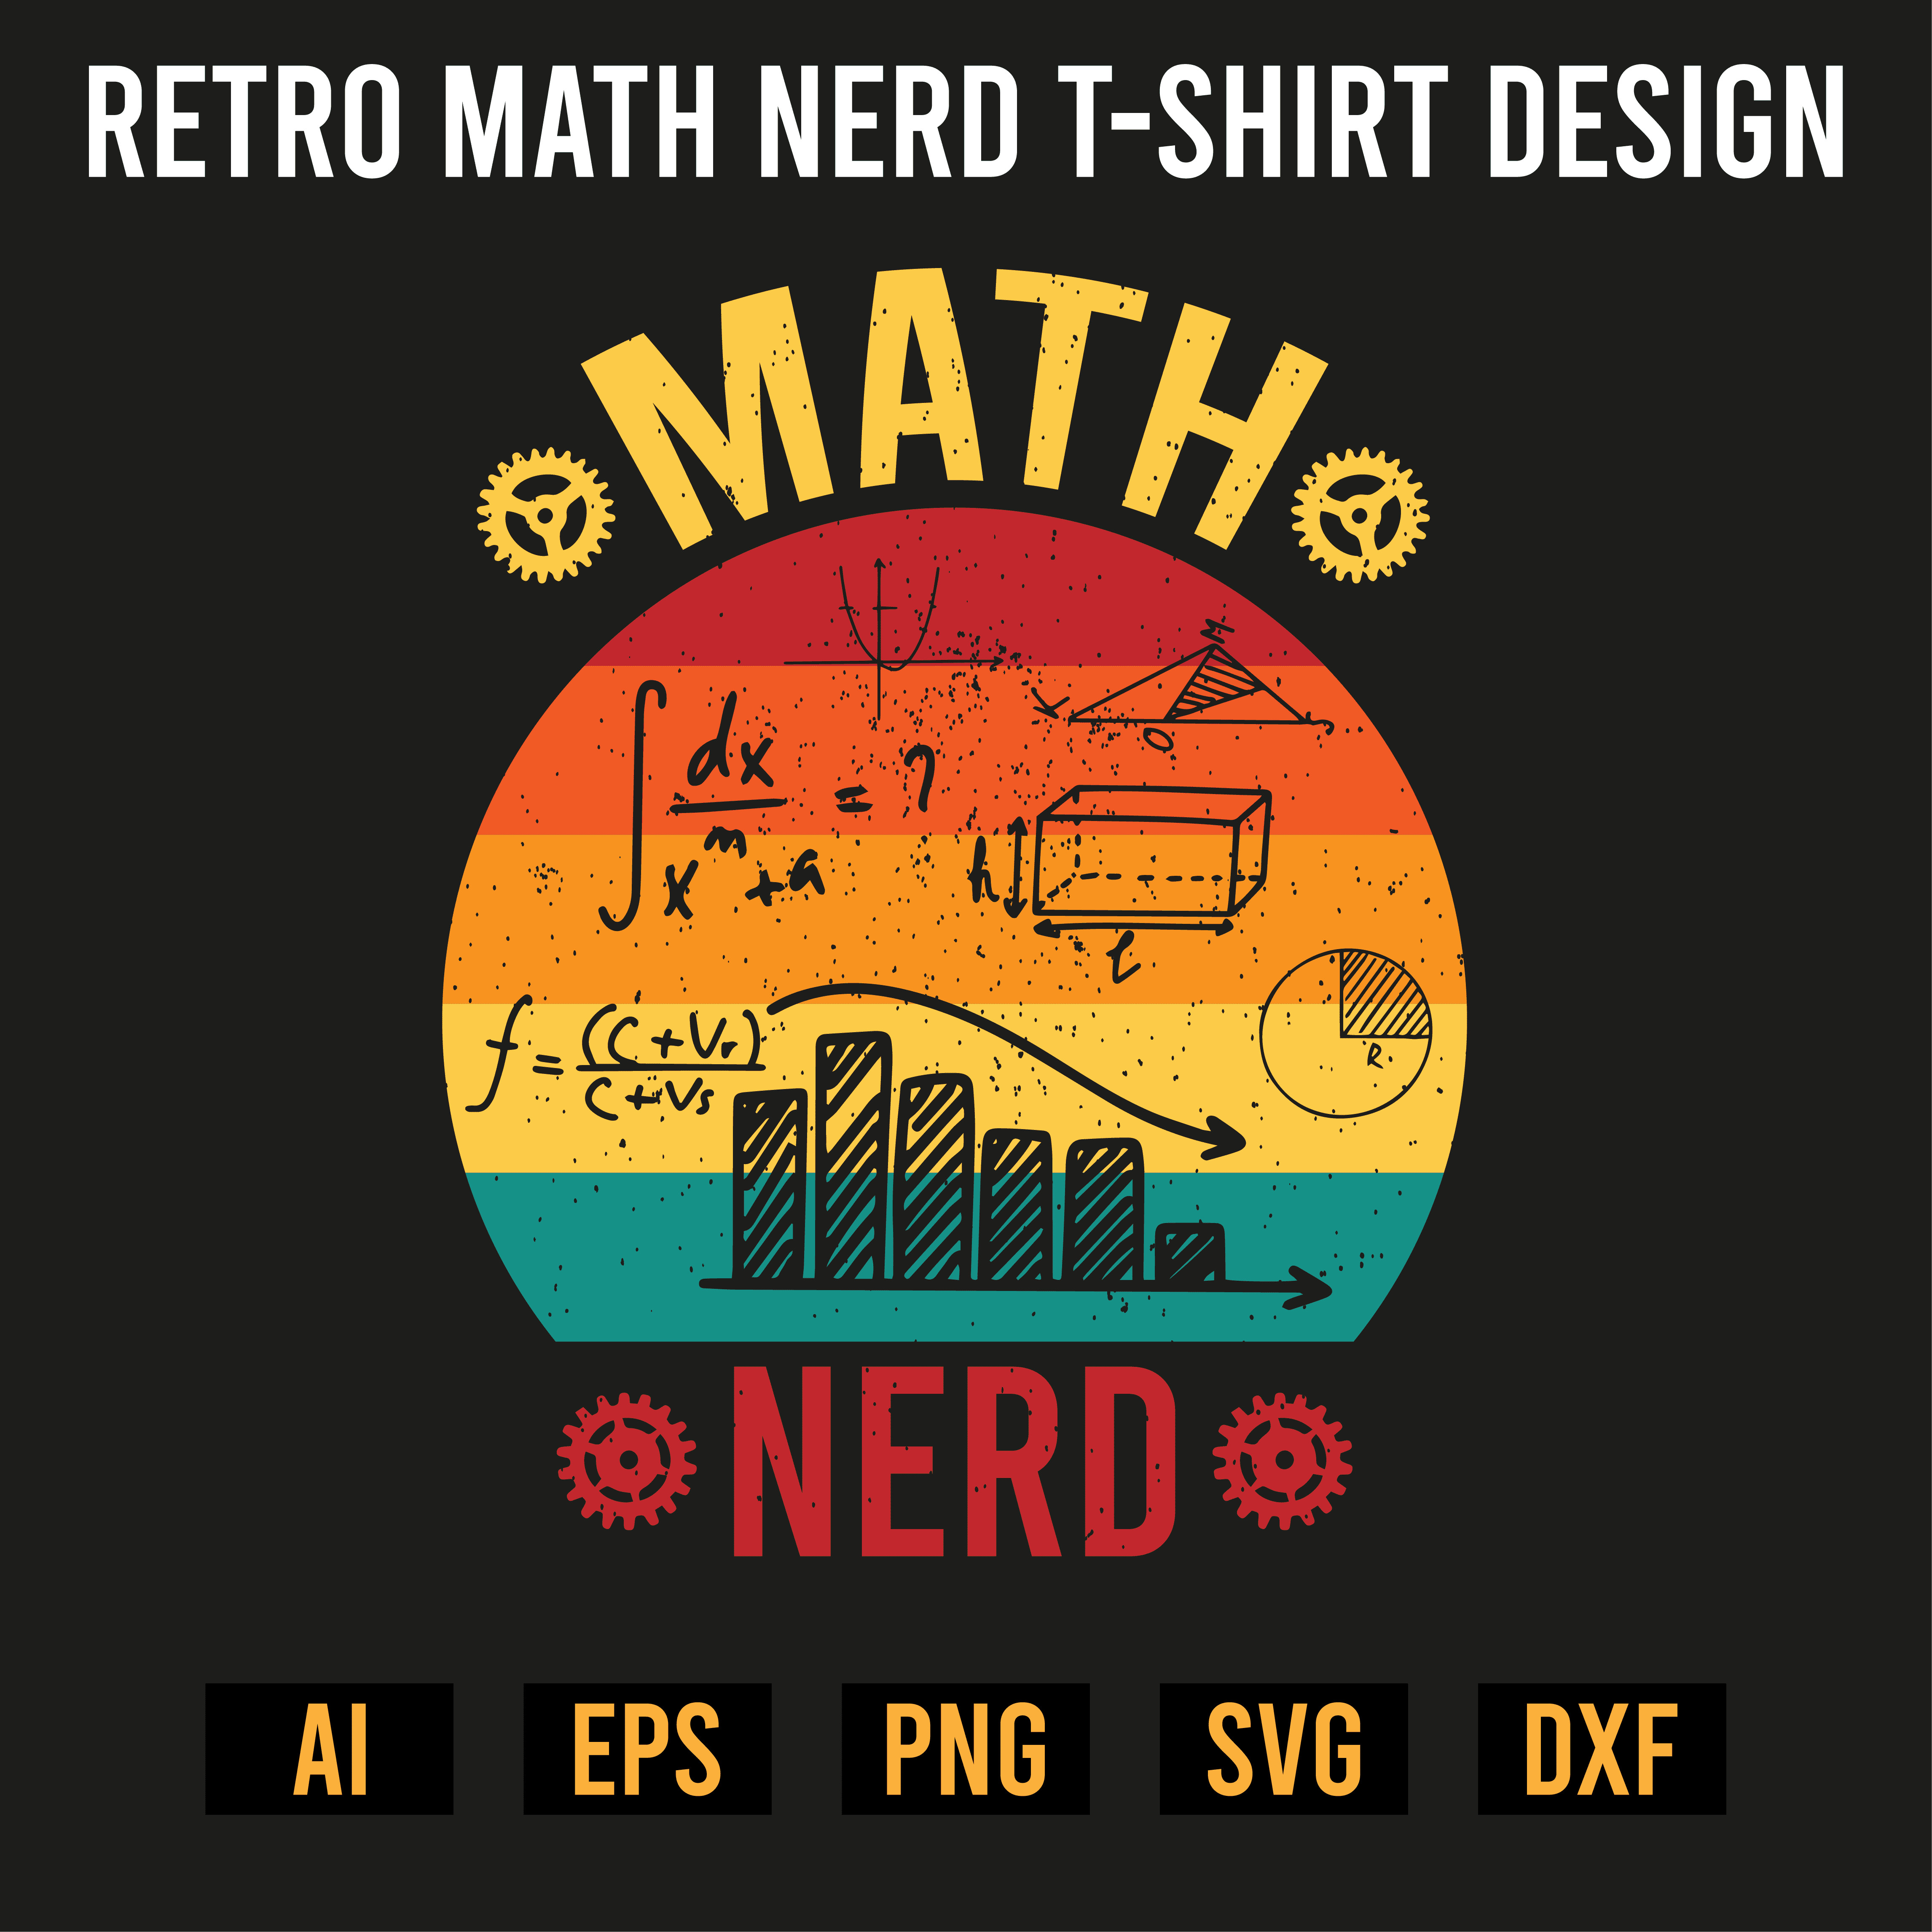 T-shirt Retro Math Nerd Design cover image.